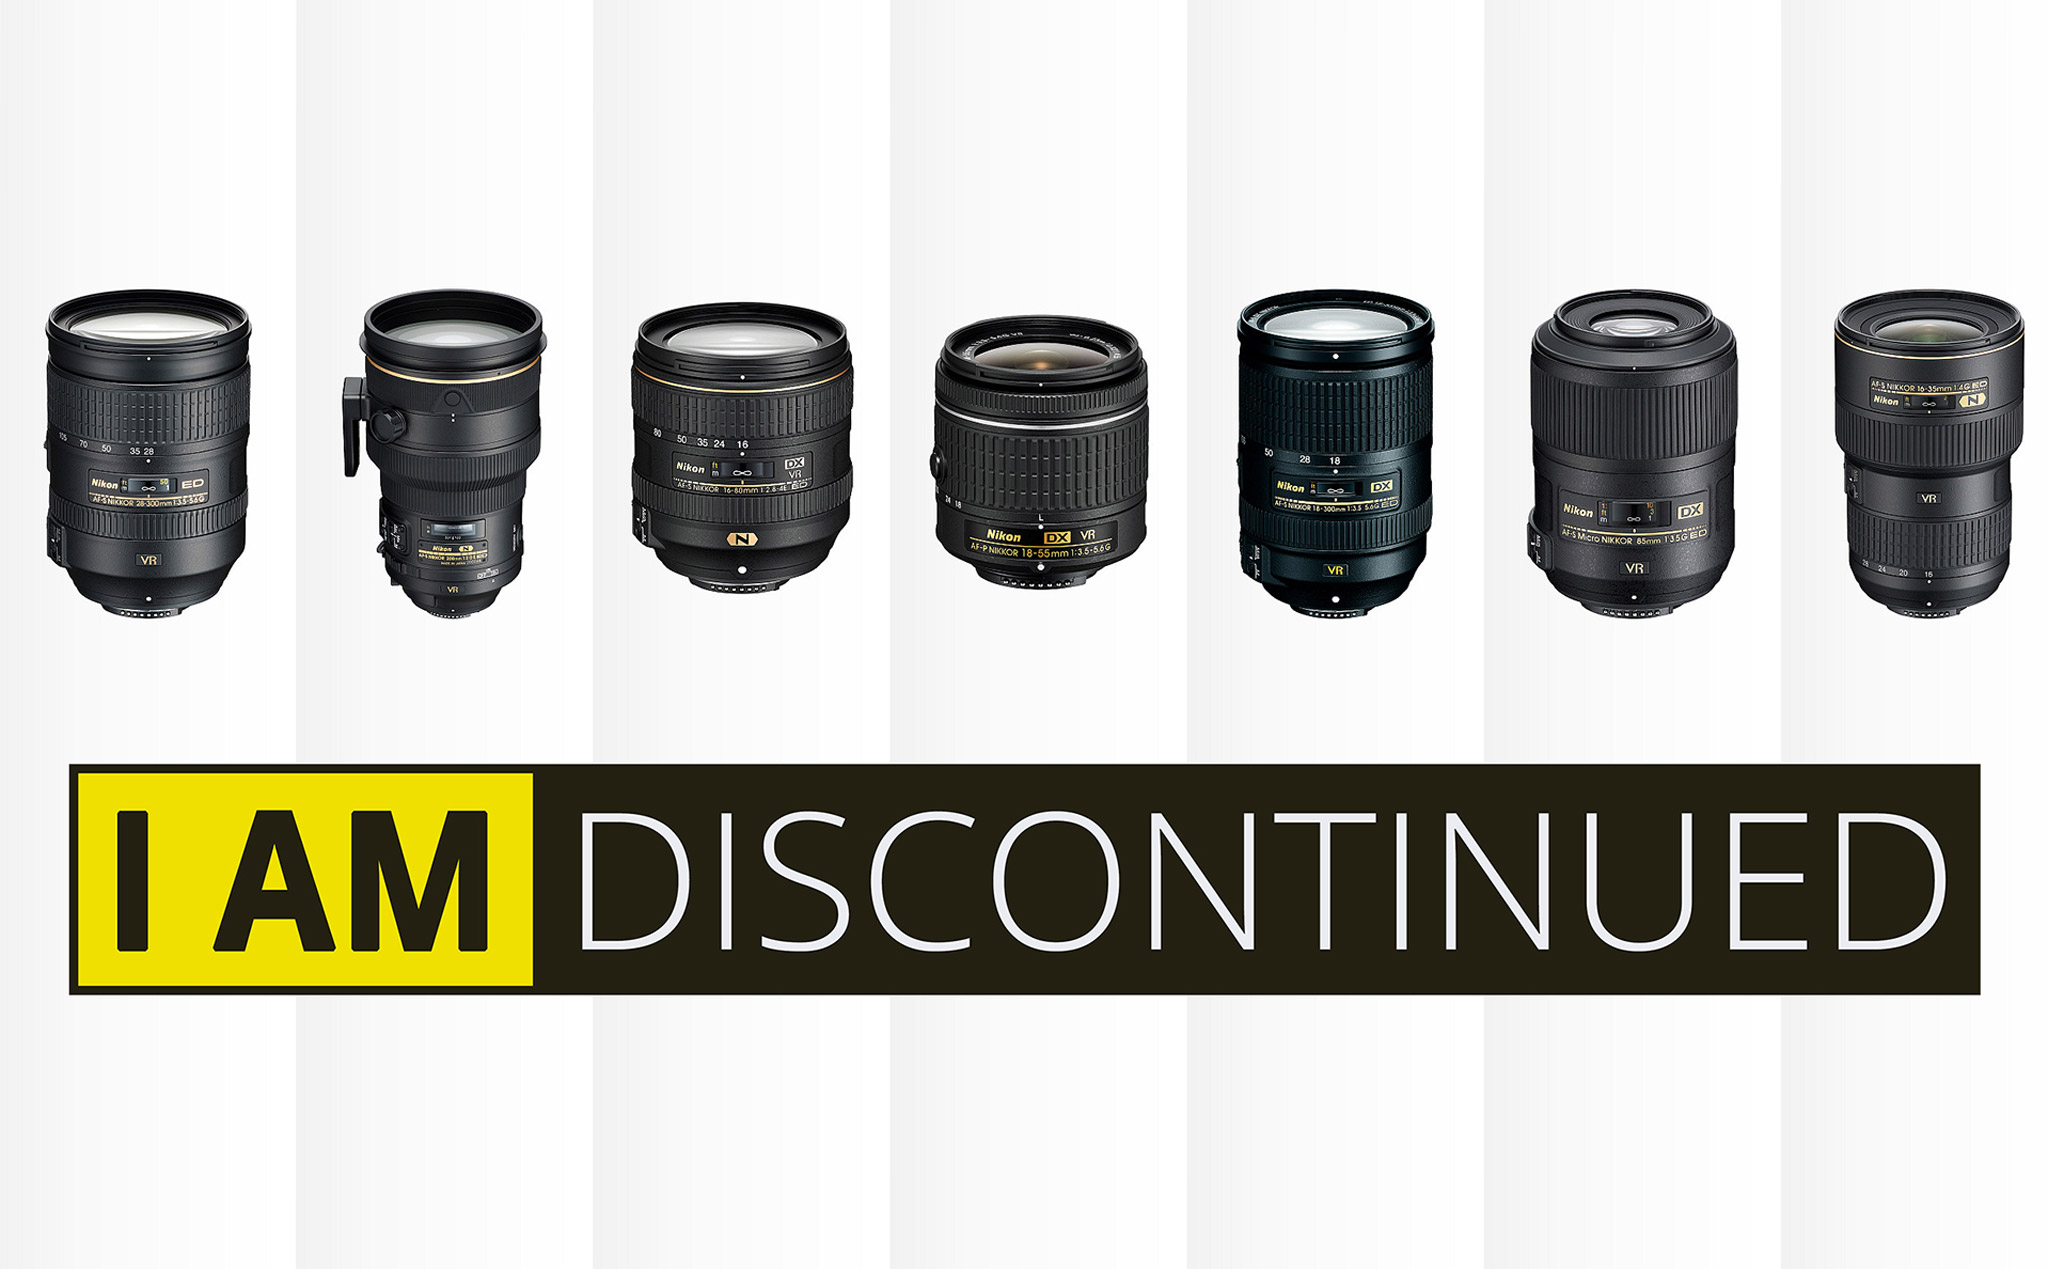 Một loạt các ống kính Nikon ngàm F tiếp tục bị dừng sản xuất